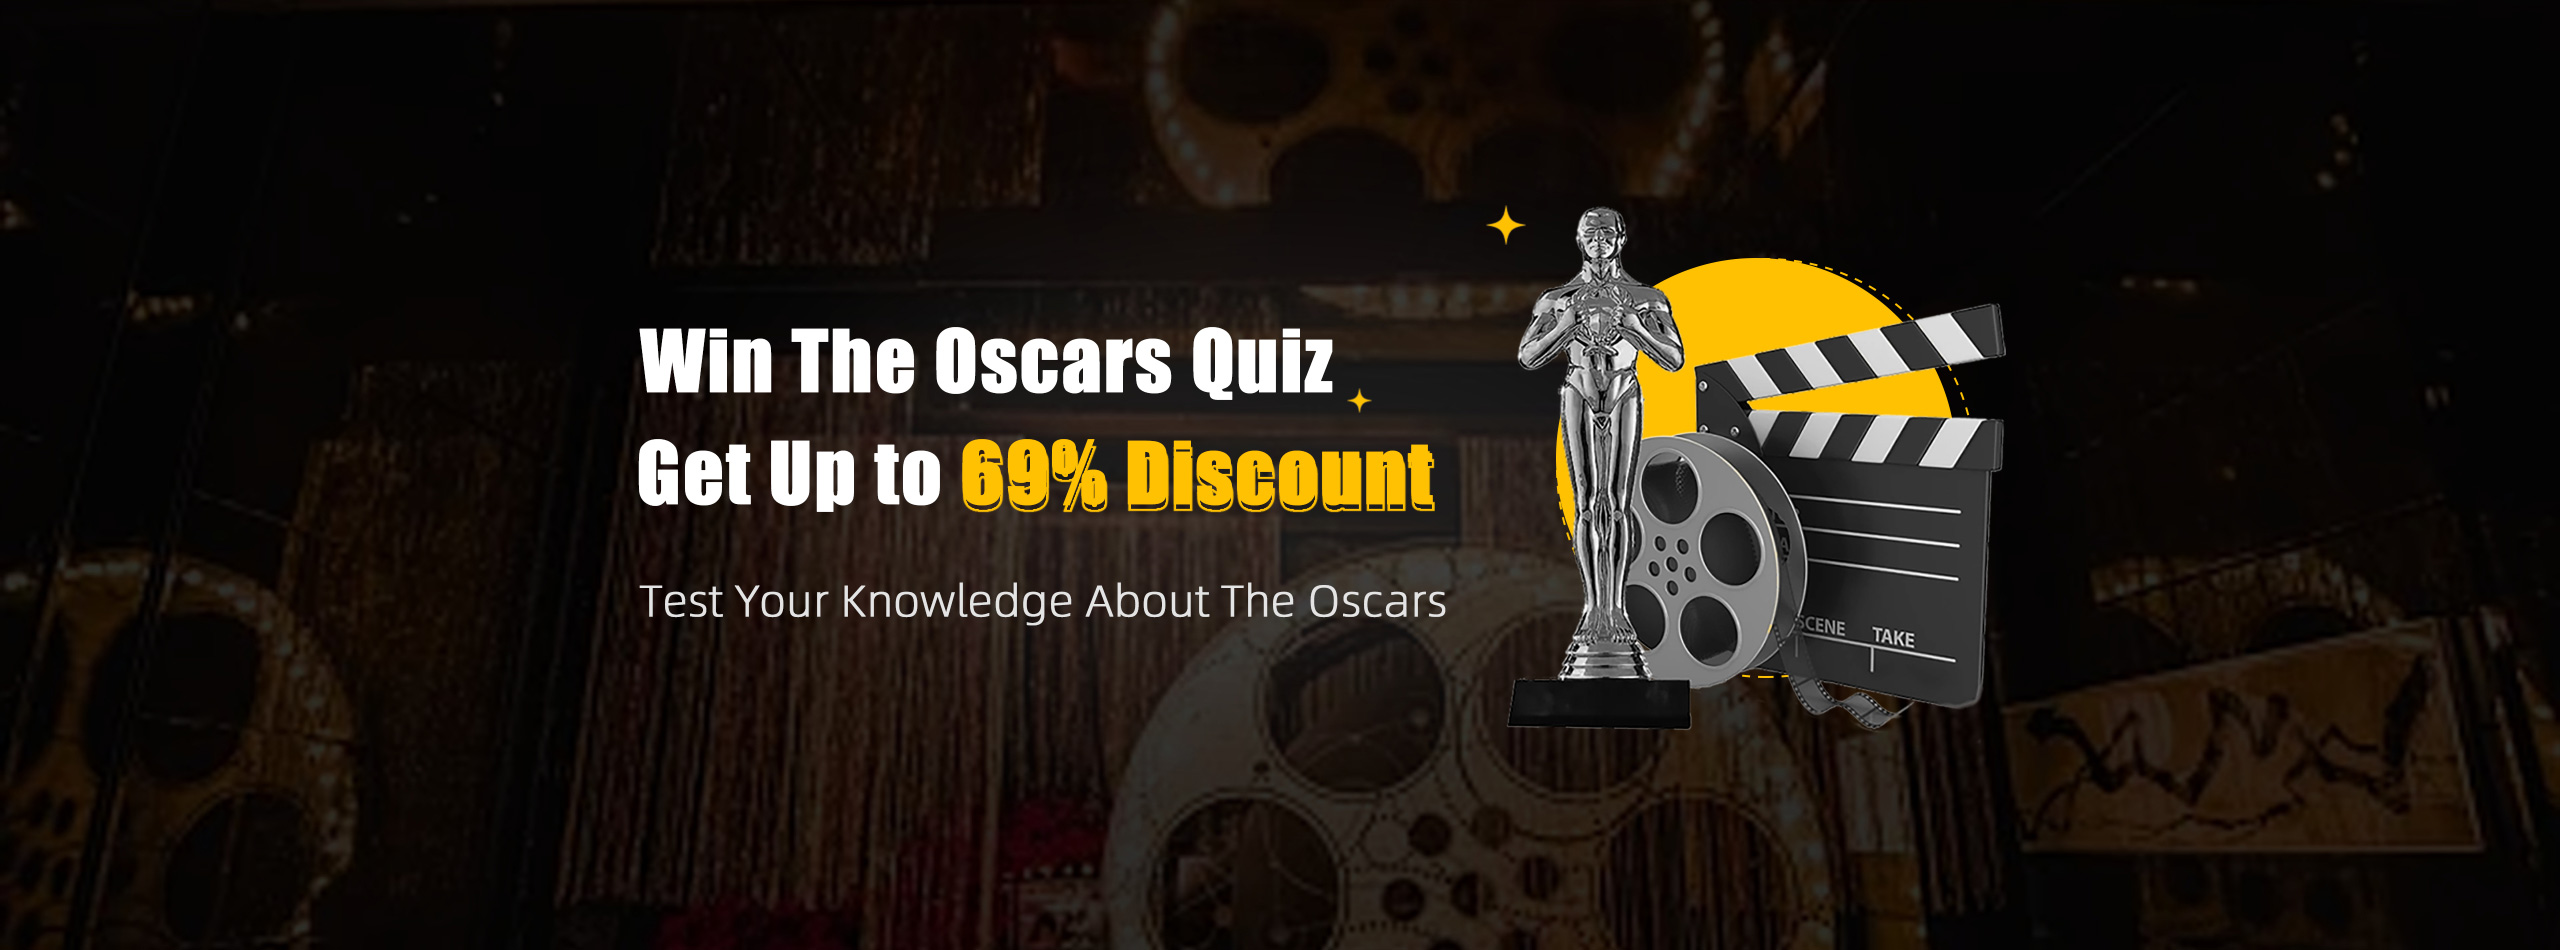 ¡Participemos en un concurso sobre los Oscars 2023 y ganemos recompensas!